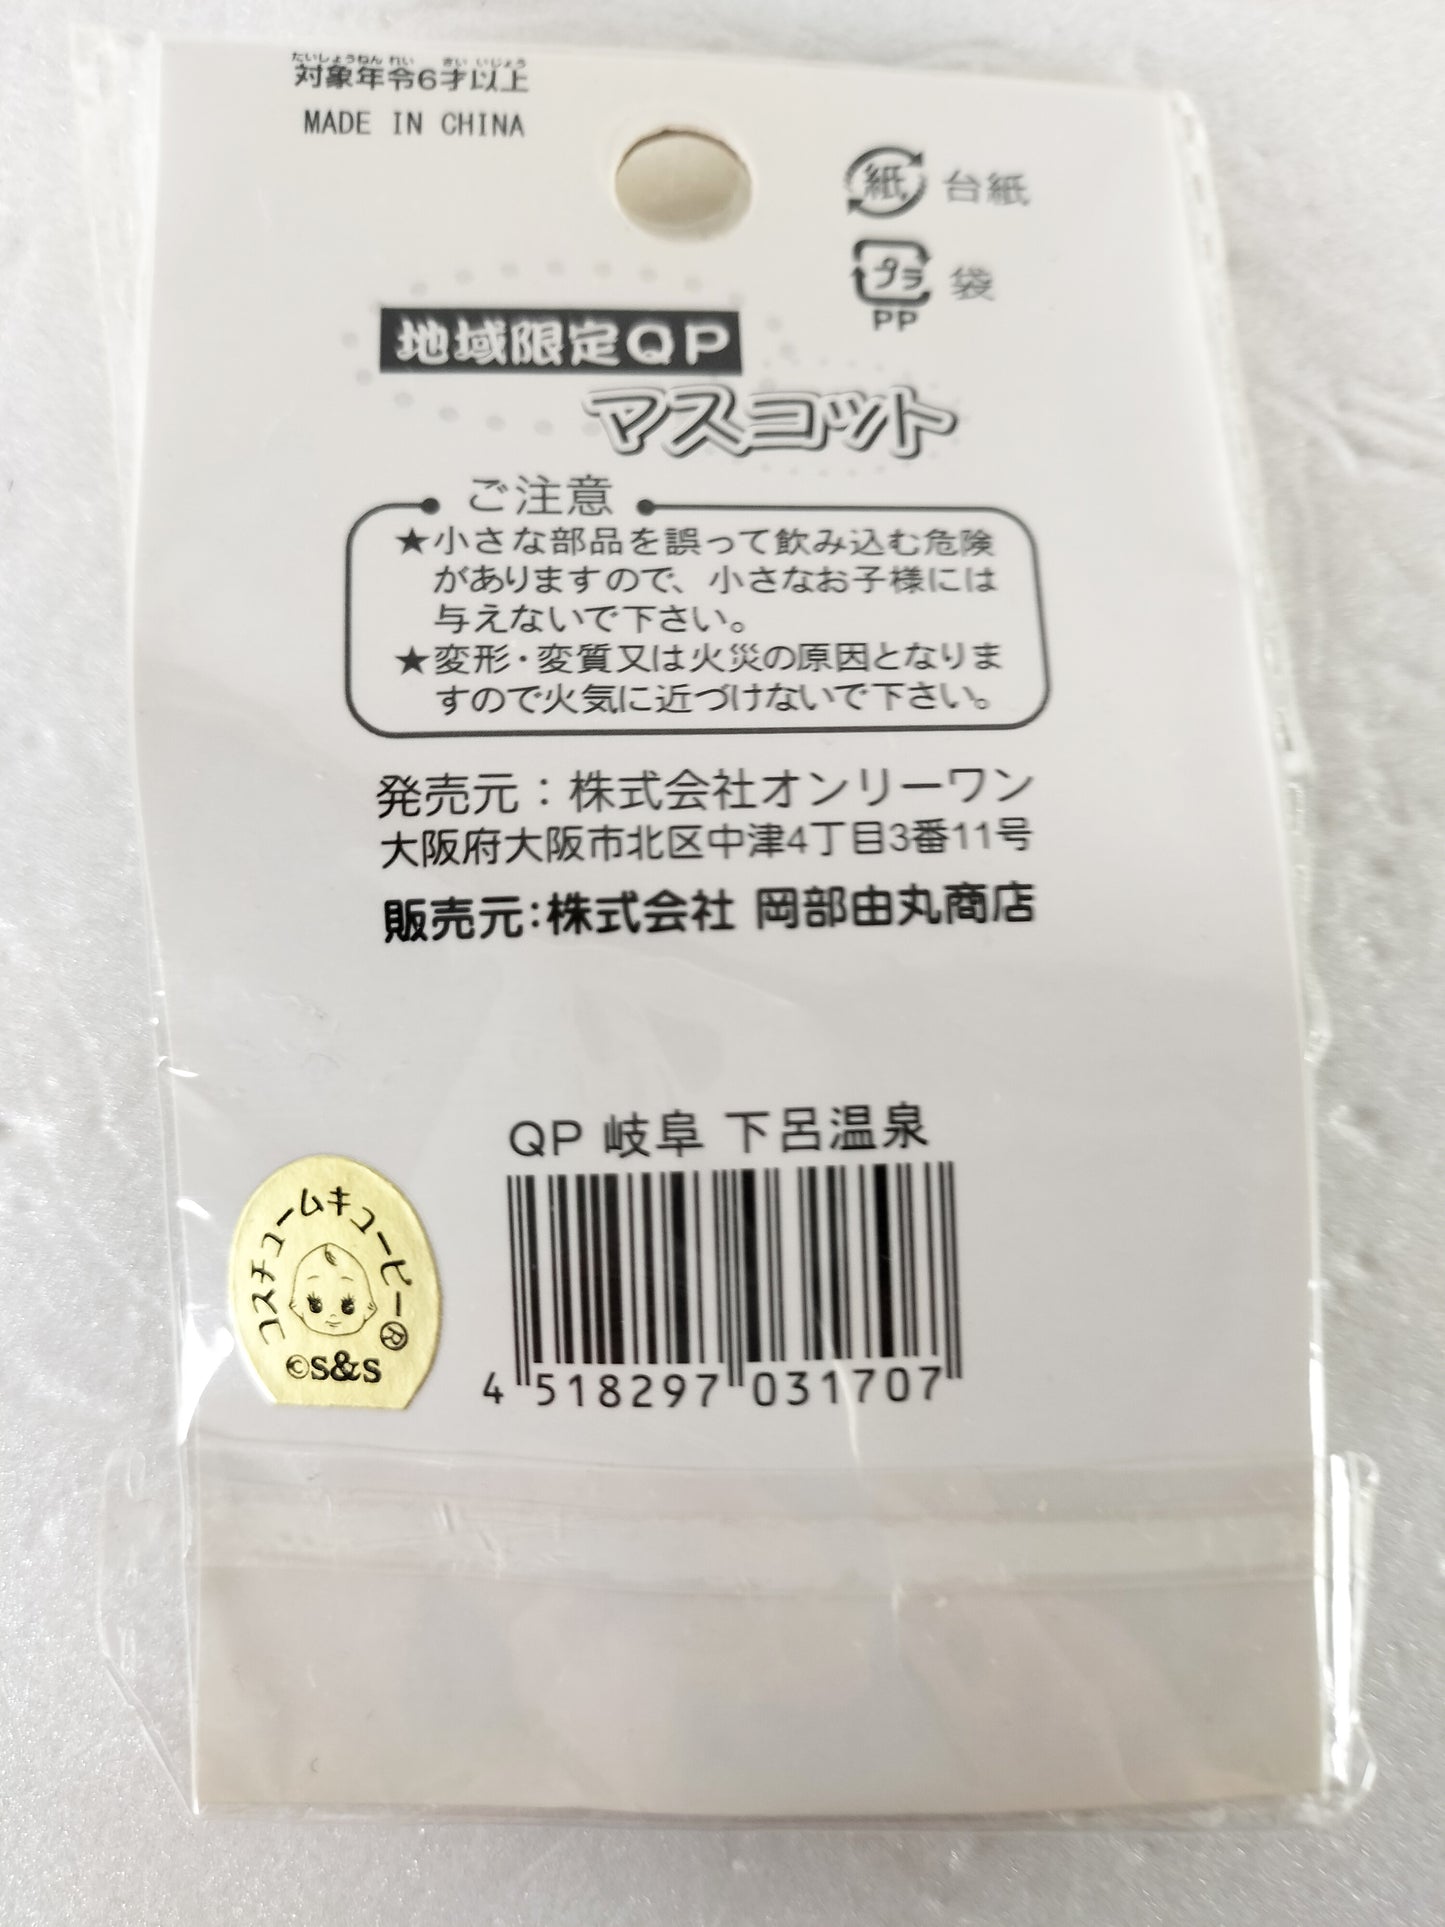 Kewpie Strap Gifu Prefecture version "Gero Onsen Kewpie" vintage